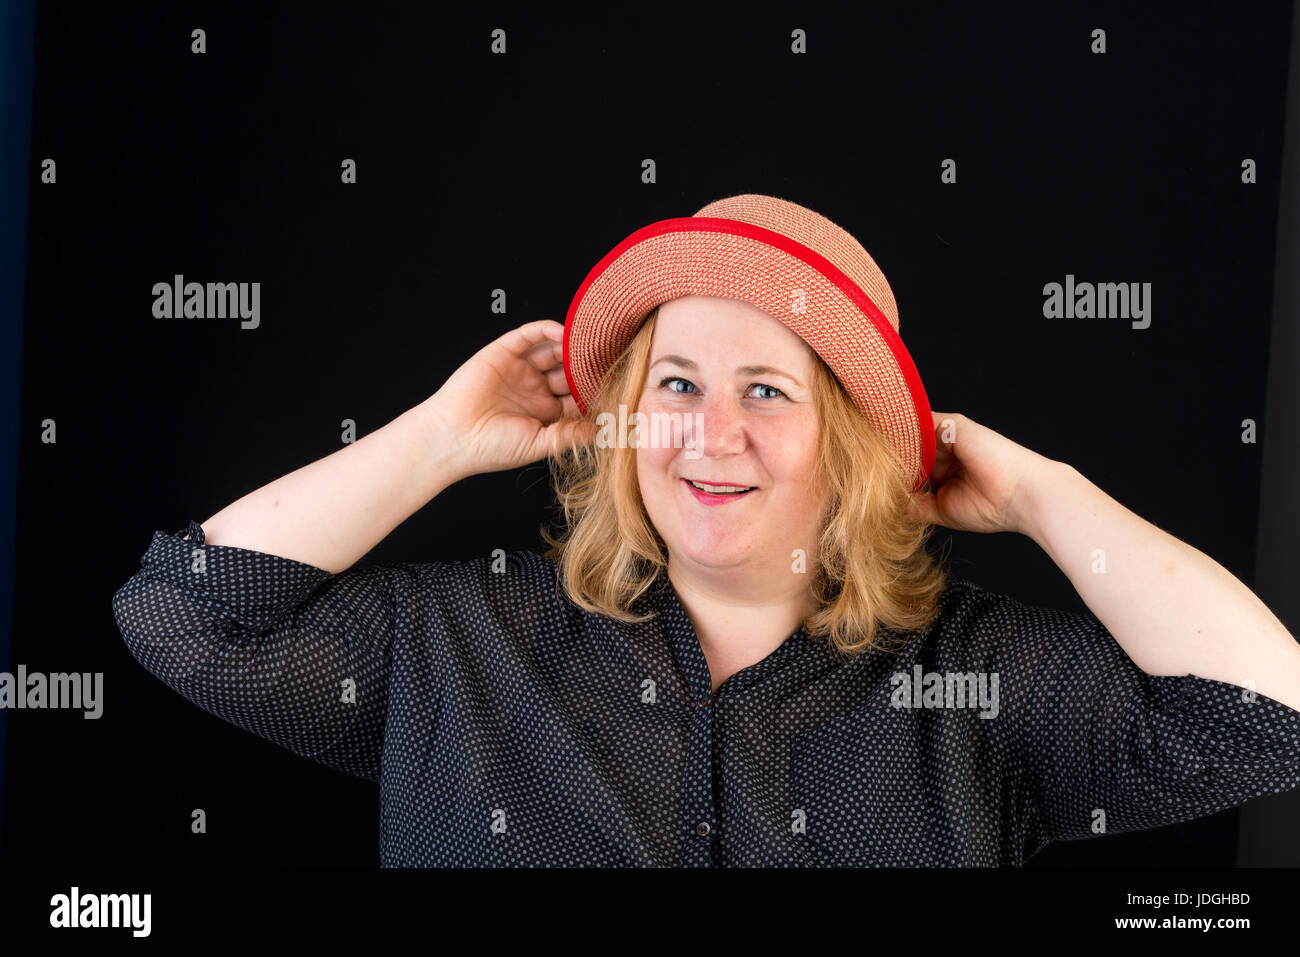 Portrait of a happy belle lumière européenne surpondérés red haired femme posant avec une red hat - studio shot sur fond noir Banque D'Images